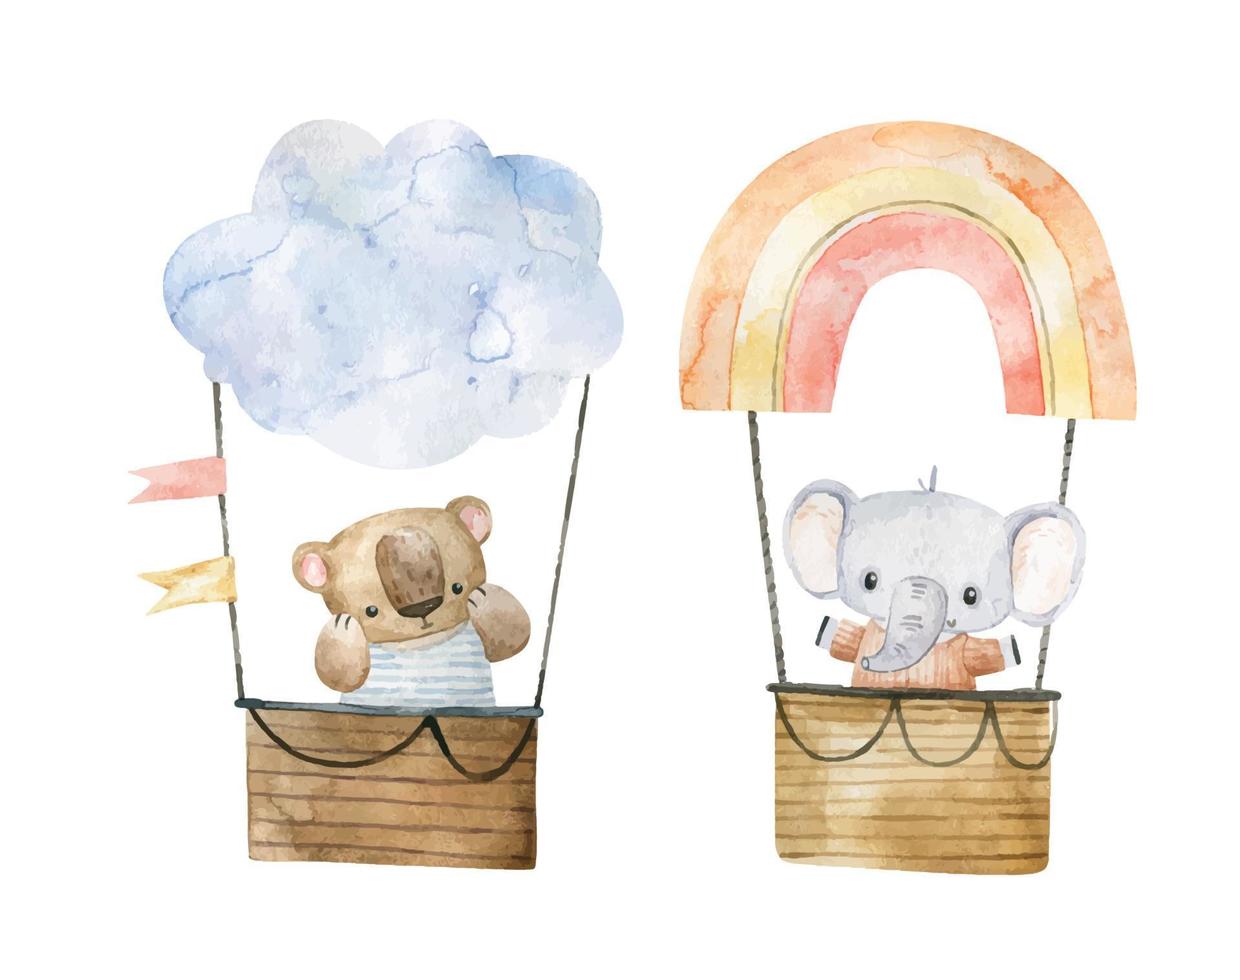 fofa infantil ilustração com animais em quente ar balão, transporte. aventura poster vetor